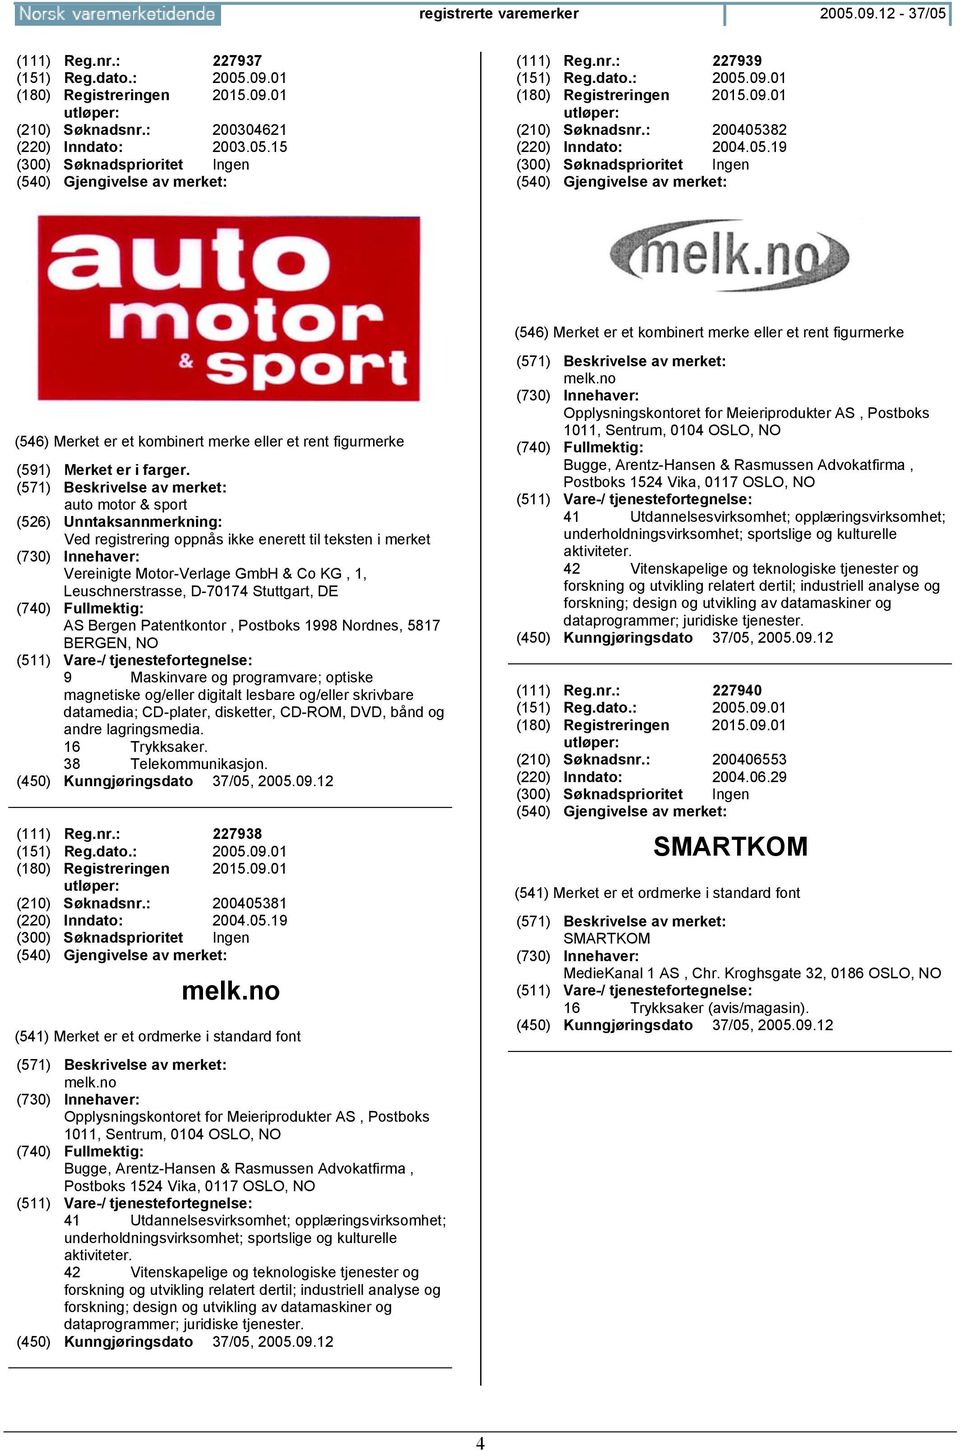 auto motor & sport (526) Unntaksannmerkning: Ved registrering oppnås ikke enerett til teksten i merket Vereinigte Motor-Verlage GmbH & Co KG, 1, Leuschnerstrasse, D-70174 Stuttgart, DE AS Bergen